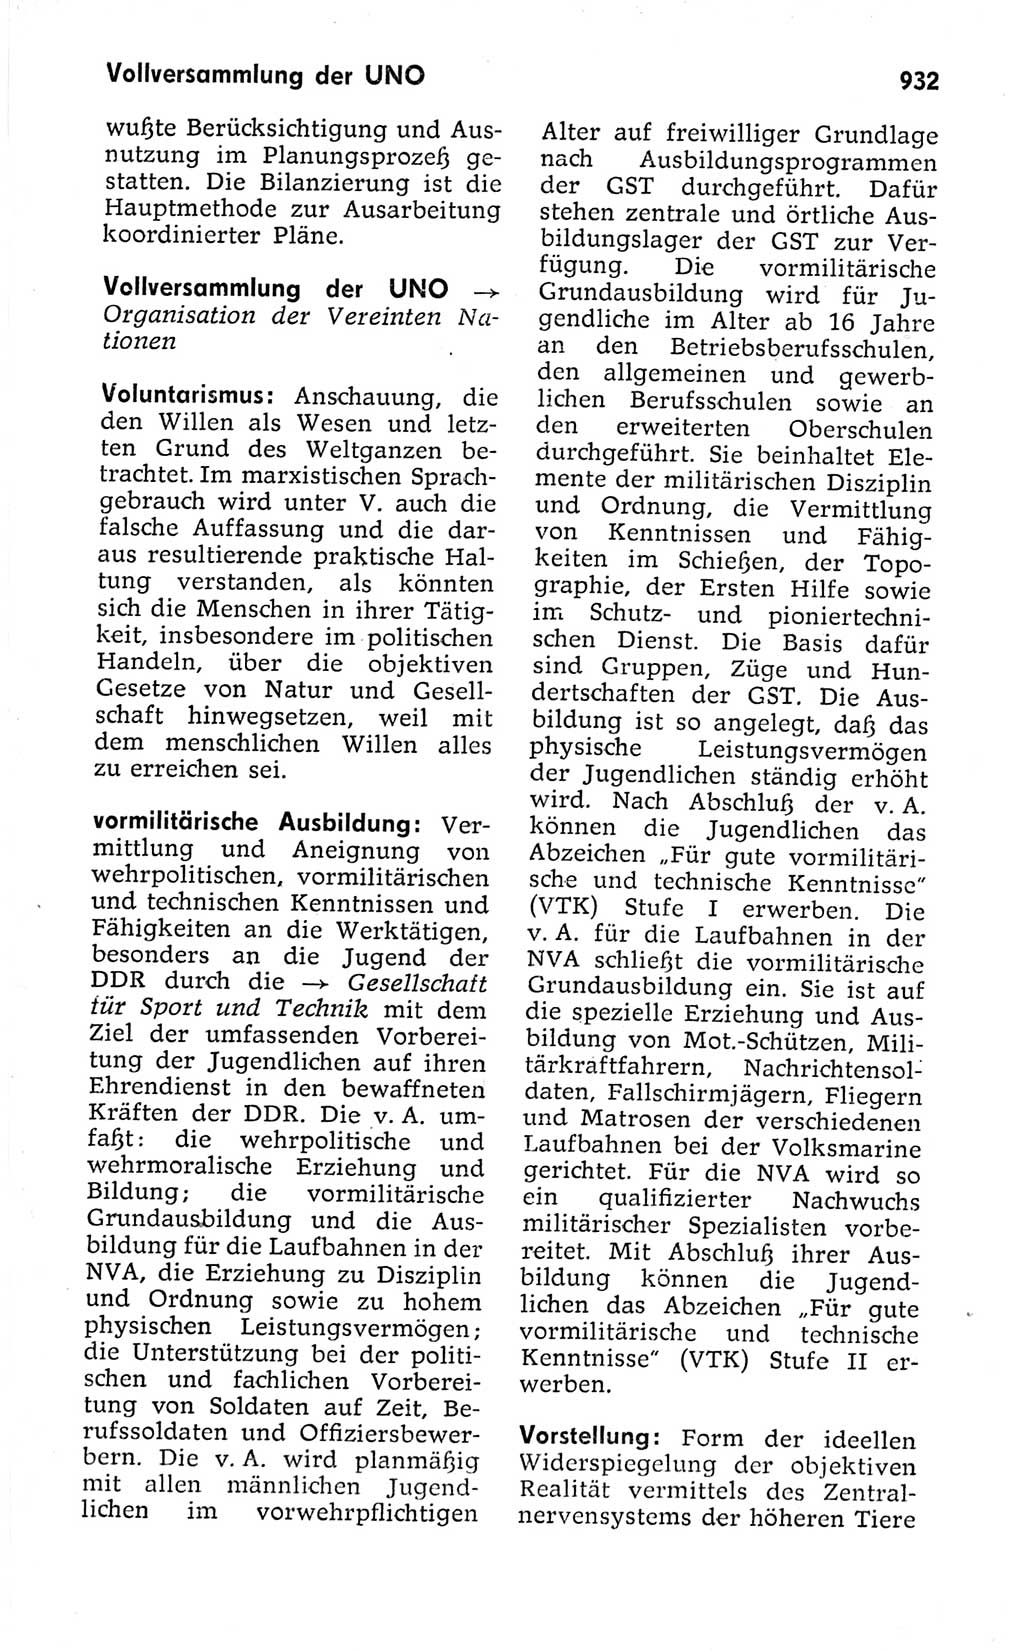 Kleines politisches Wörterbuch [Deutsche Demokratische Republik (DDR)] 1973, Seite 932 (Kl. pol. Wb. DDR 1973, S. 932)